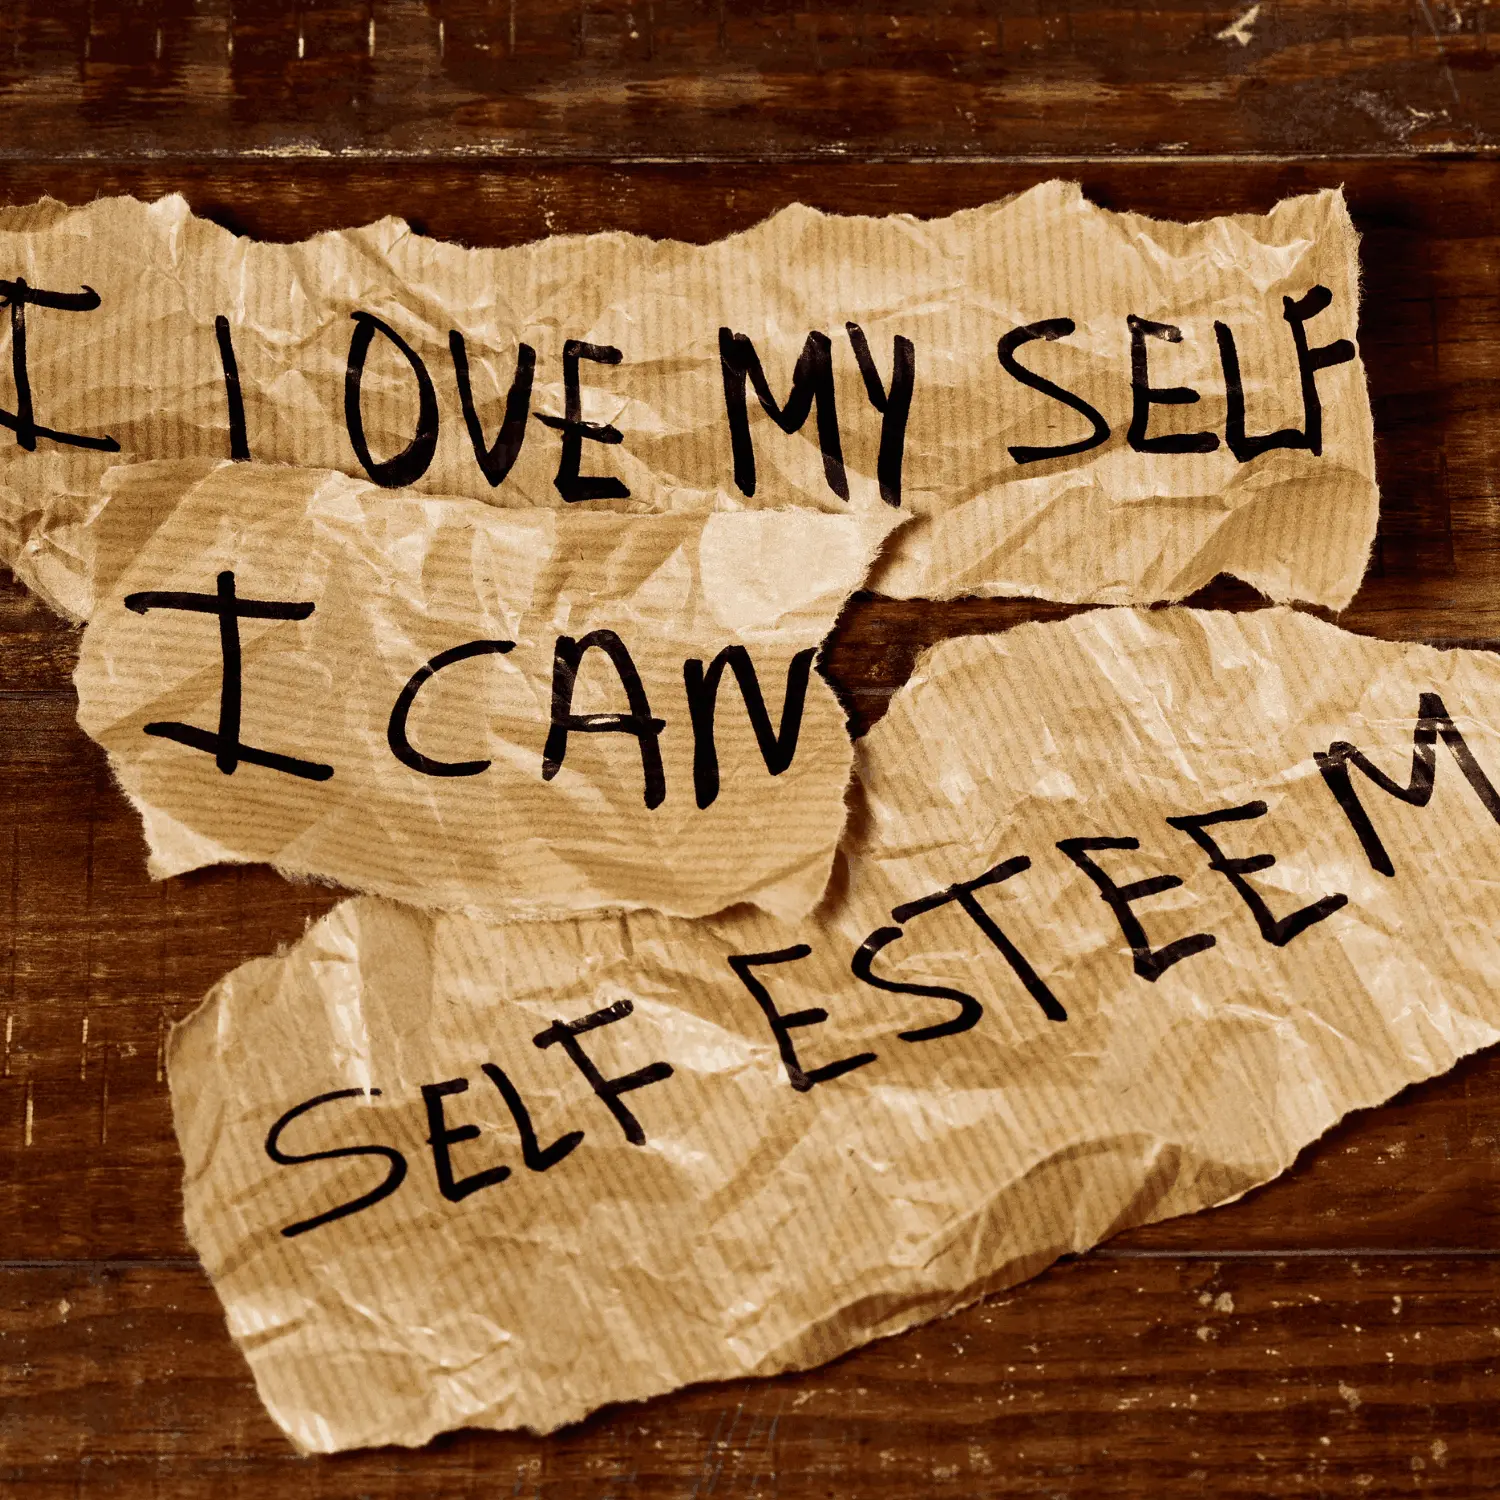 self-esteem vs self-confidence